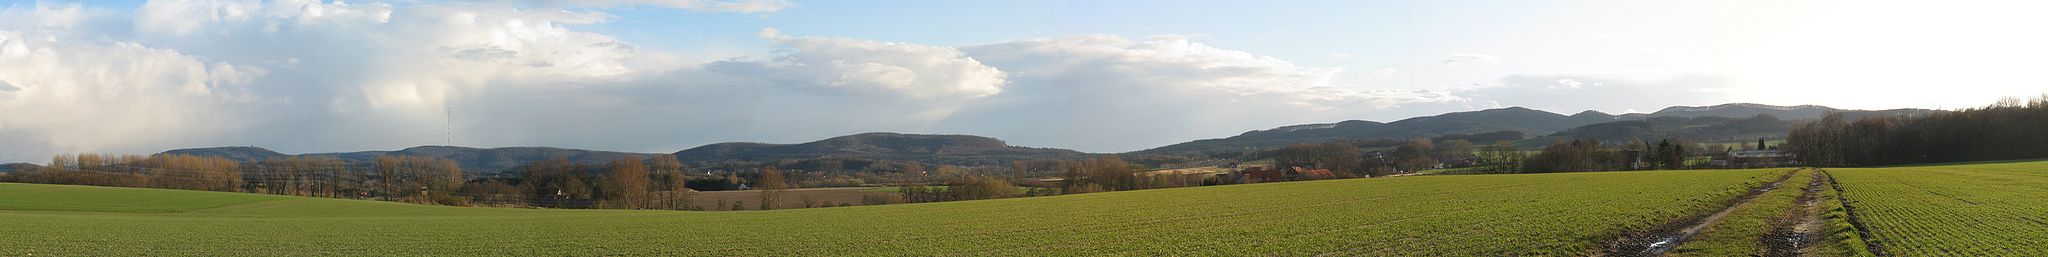 Panoramaansicht des Teutoburger Waldes in Lippe, links die Grotenburg, rechts der Stapelager Berg